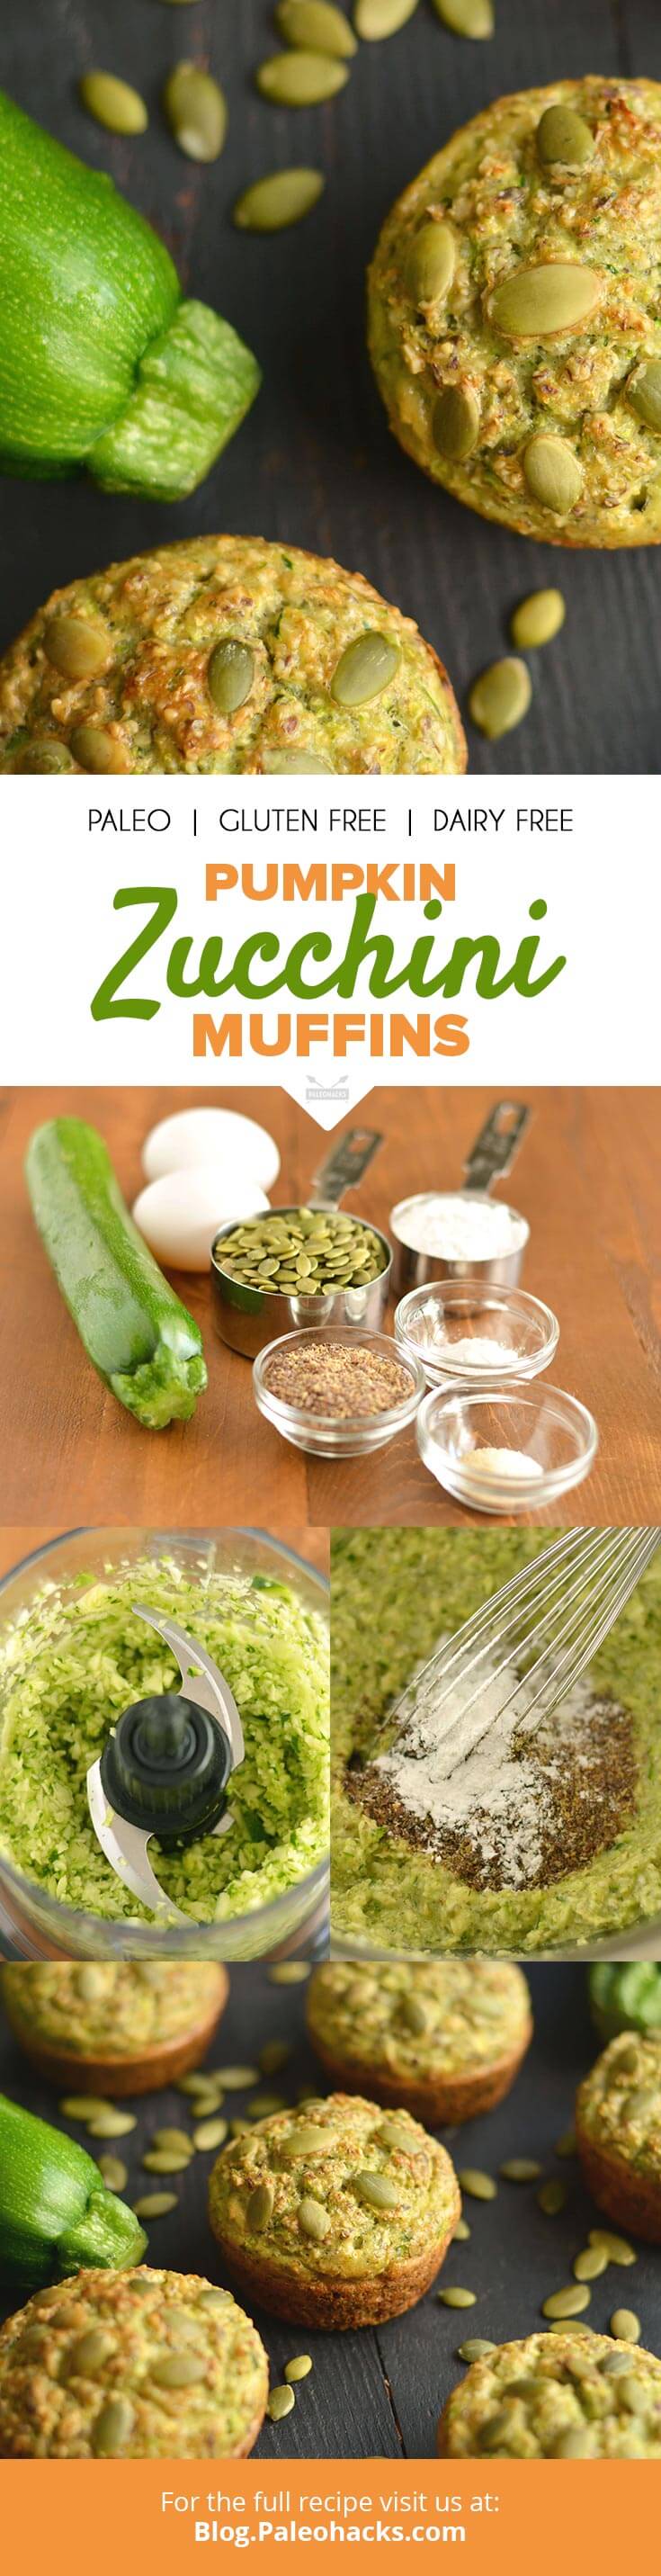 zucchini muffins pin